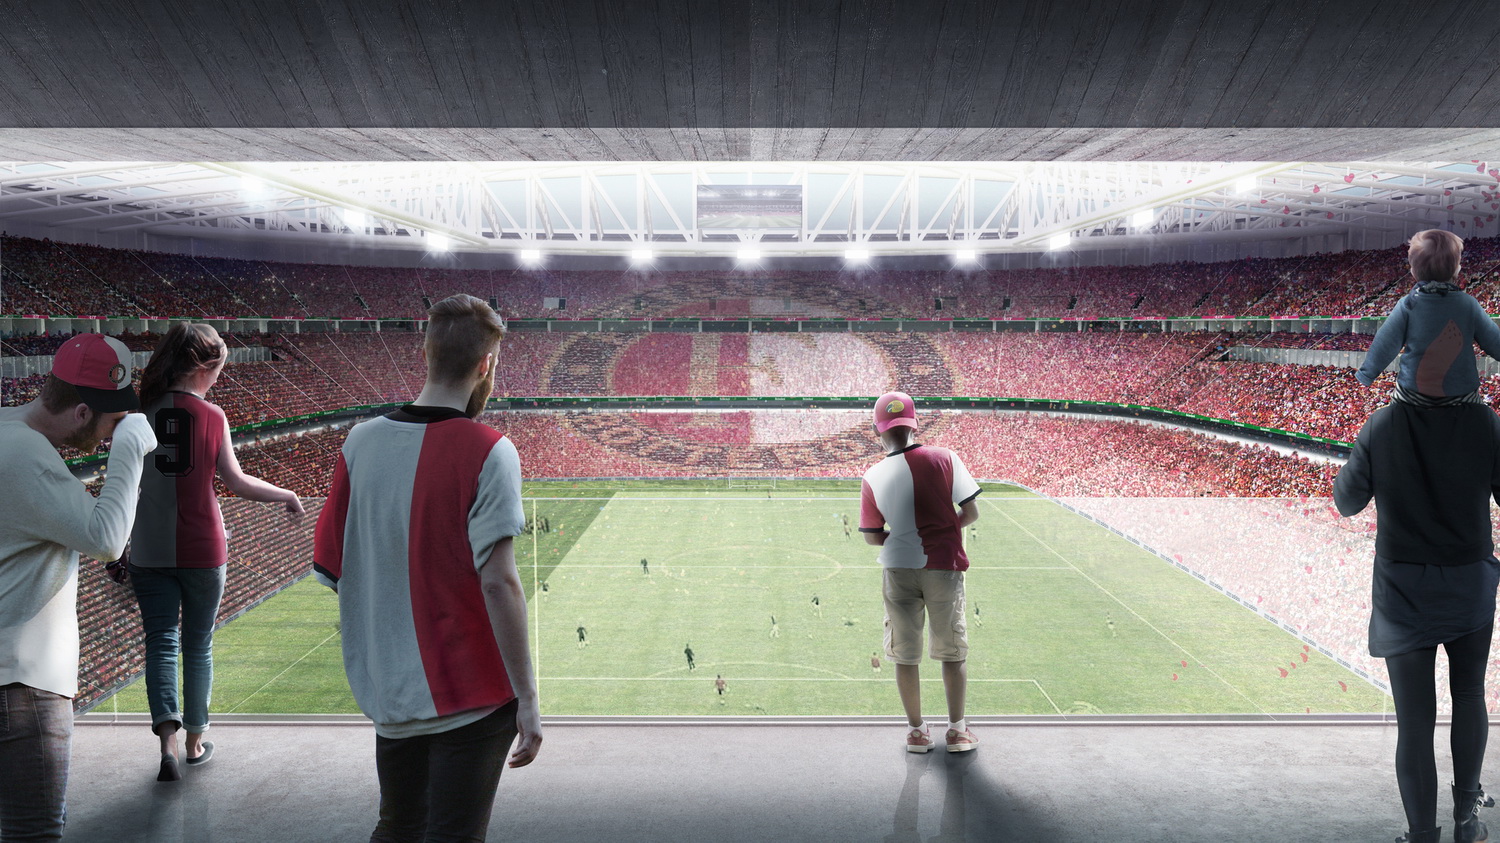 调整大小 13_10_Feyenoord_City_Stadium_GA_Concourse.jpg